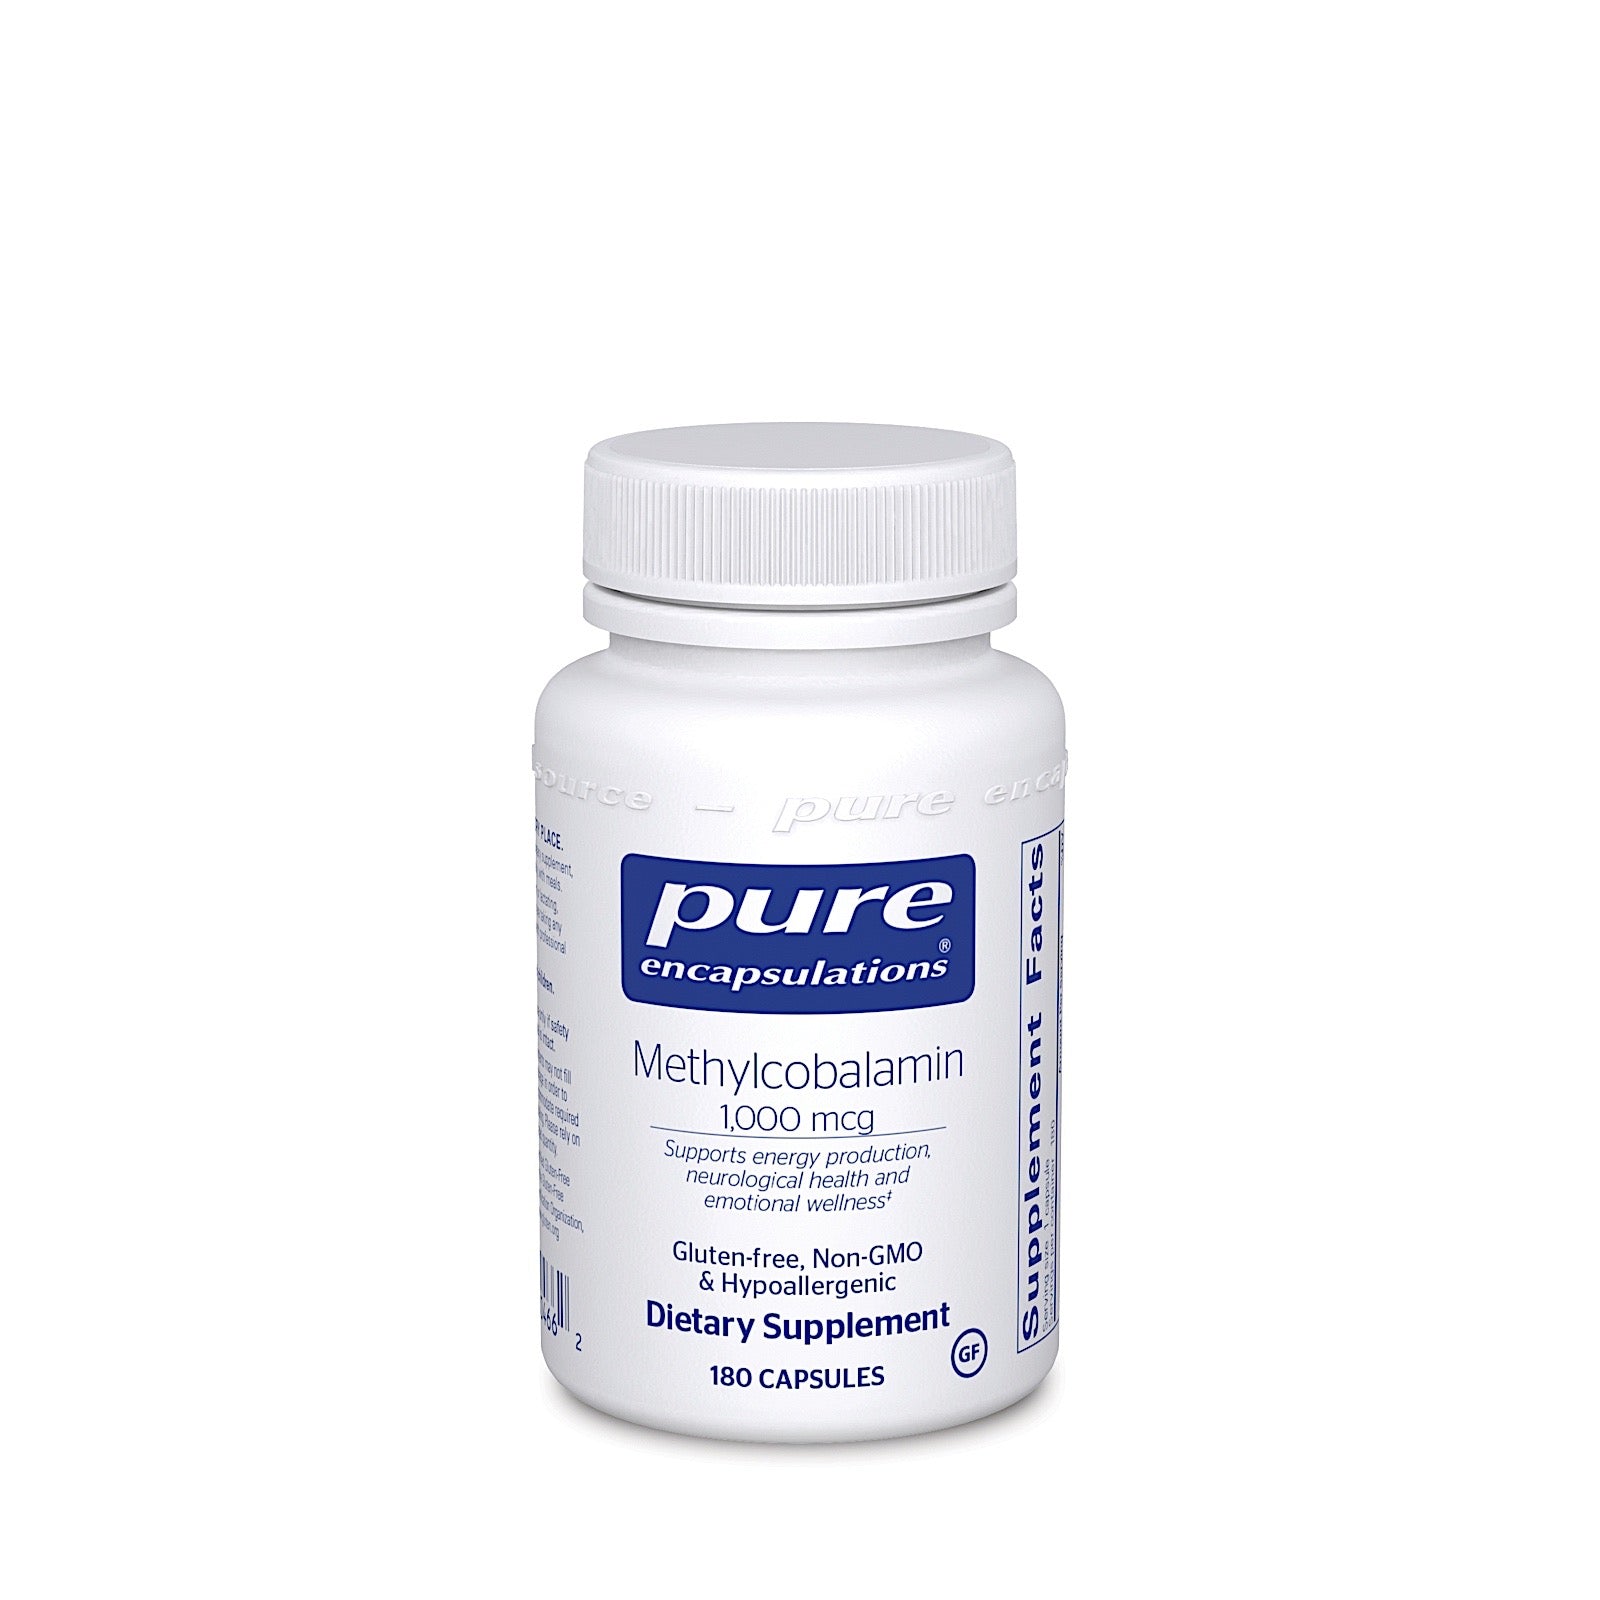 Pure Encapsulations, Methylcobalamin 1000 mcg, 180 Capsules - 766298004662 | Hilife Vitamins